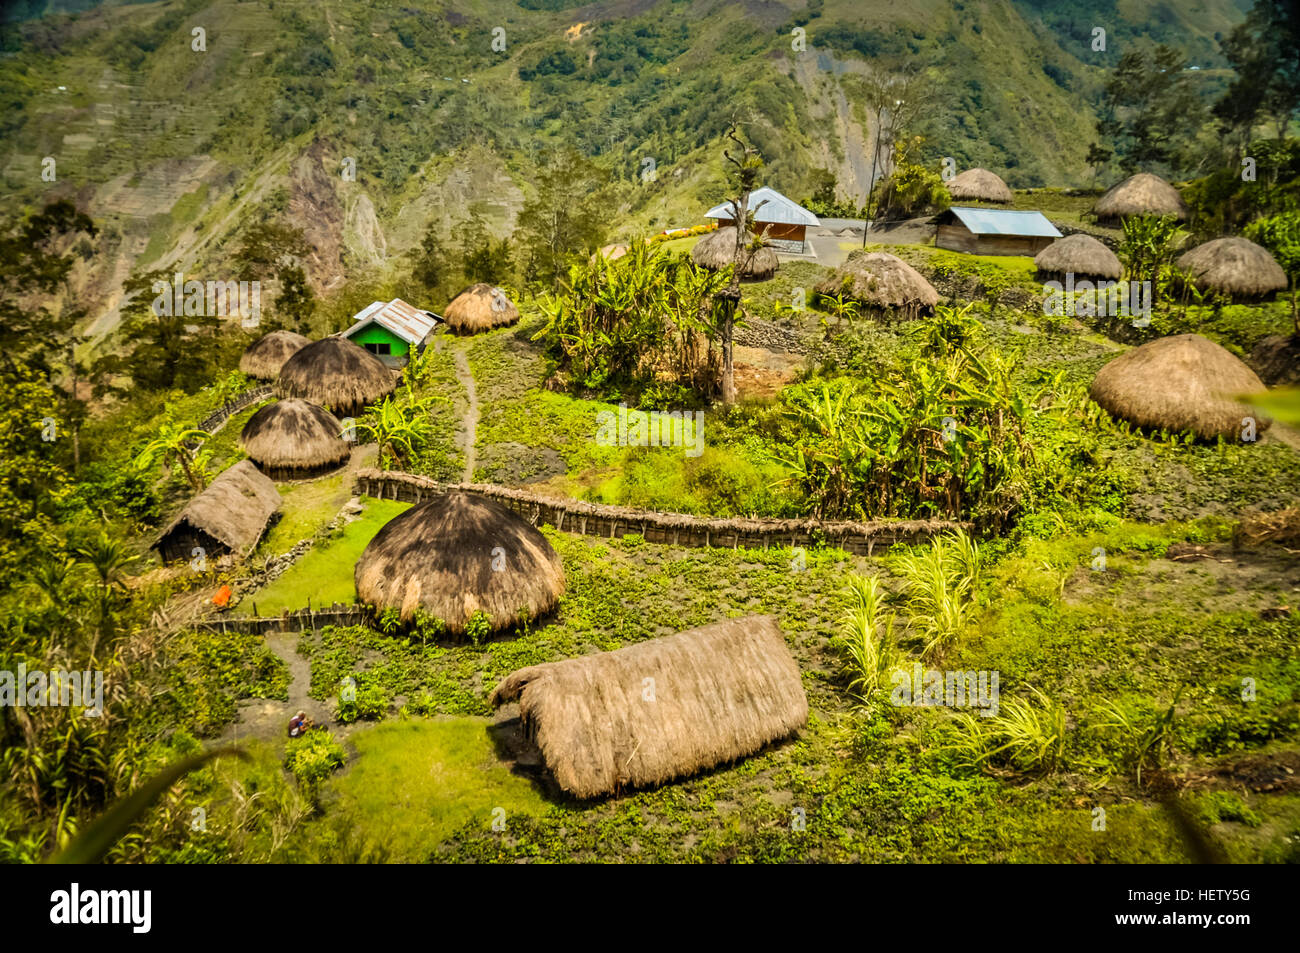 Foto des traditionellen Dorfes Häuser mit Stroh Dächer im Dorf, umgeben von hohen Bergen in Dani Schaltung in der Nähe von Wamena, Papua, Indonesien. Stockfoto